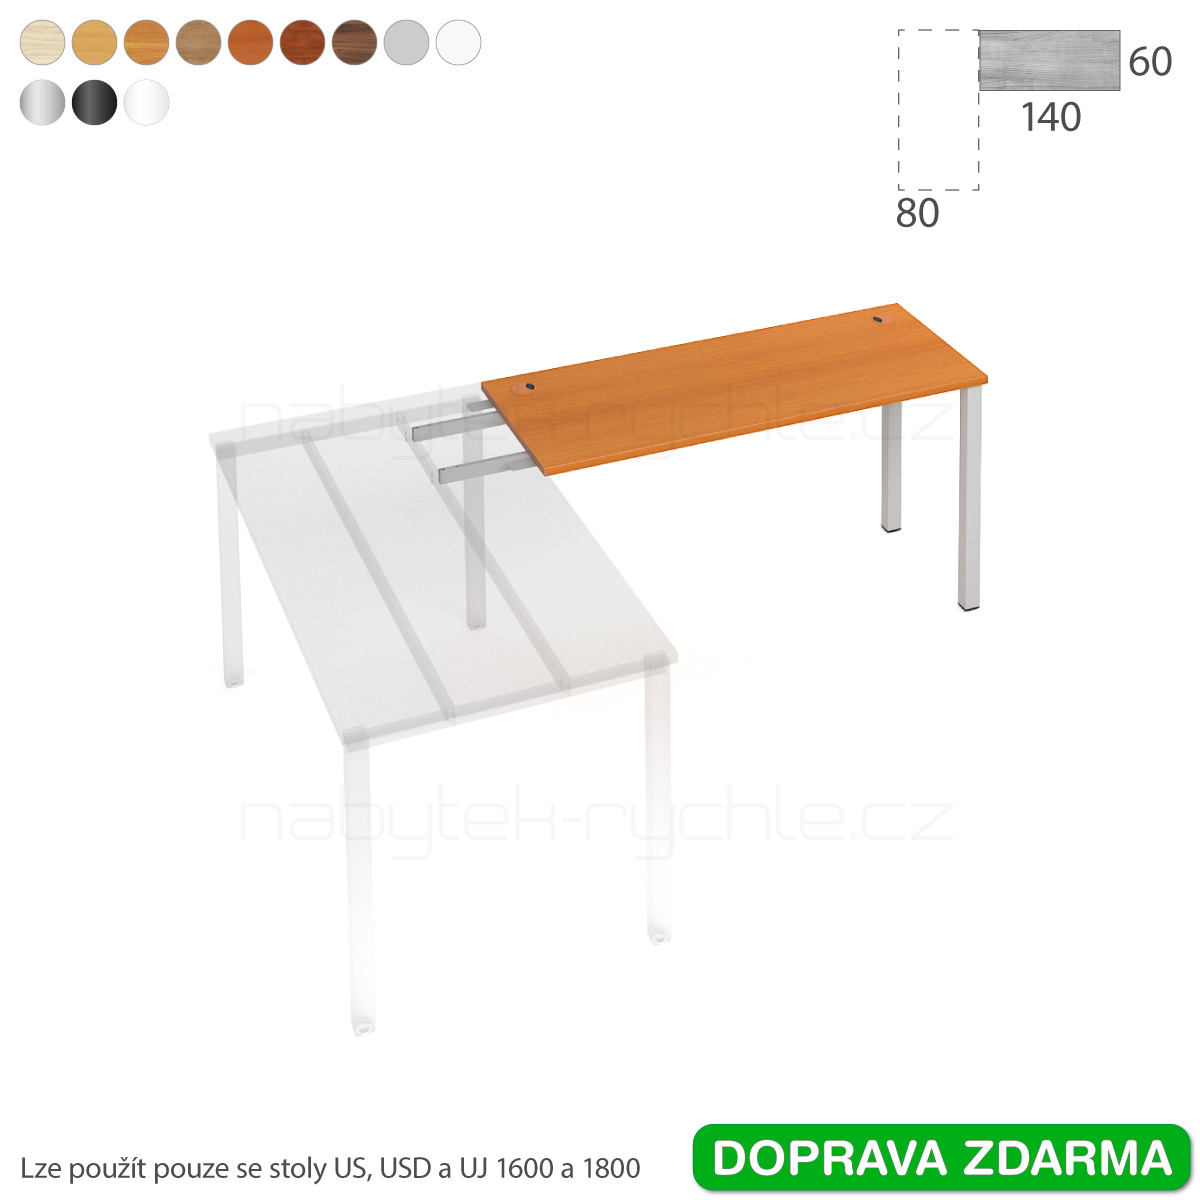 UE 1400 RU Hobis UNI - Stůl řetězící do úhlu 140 x 60